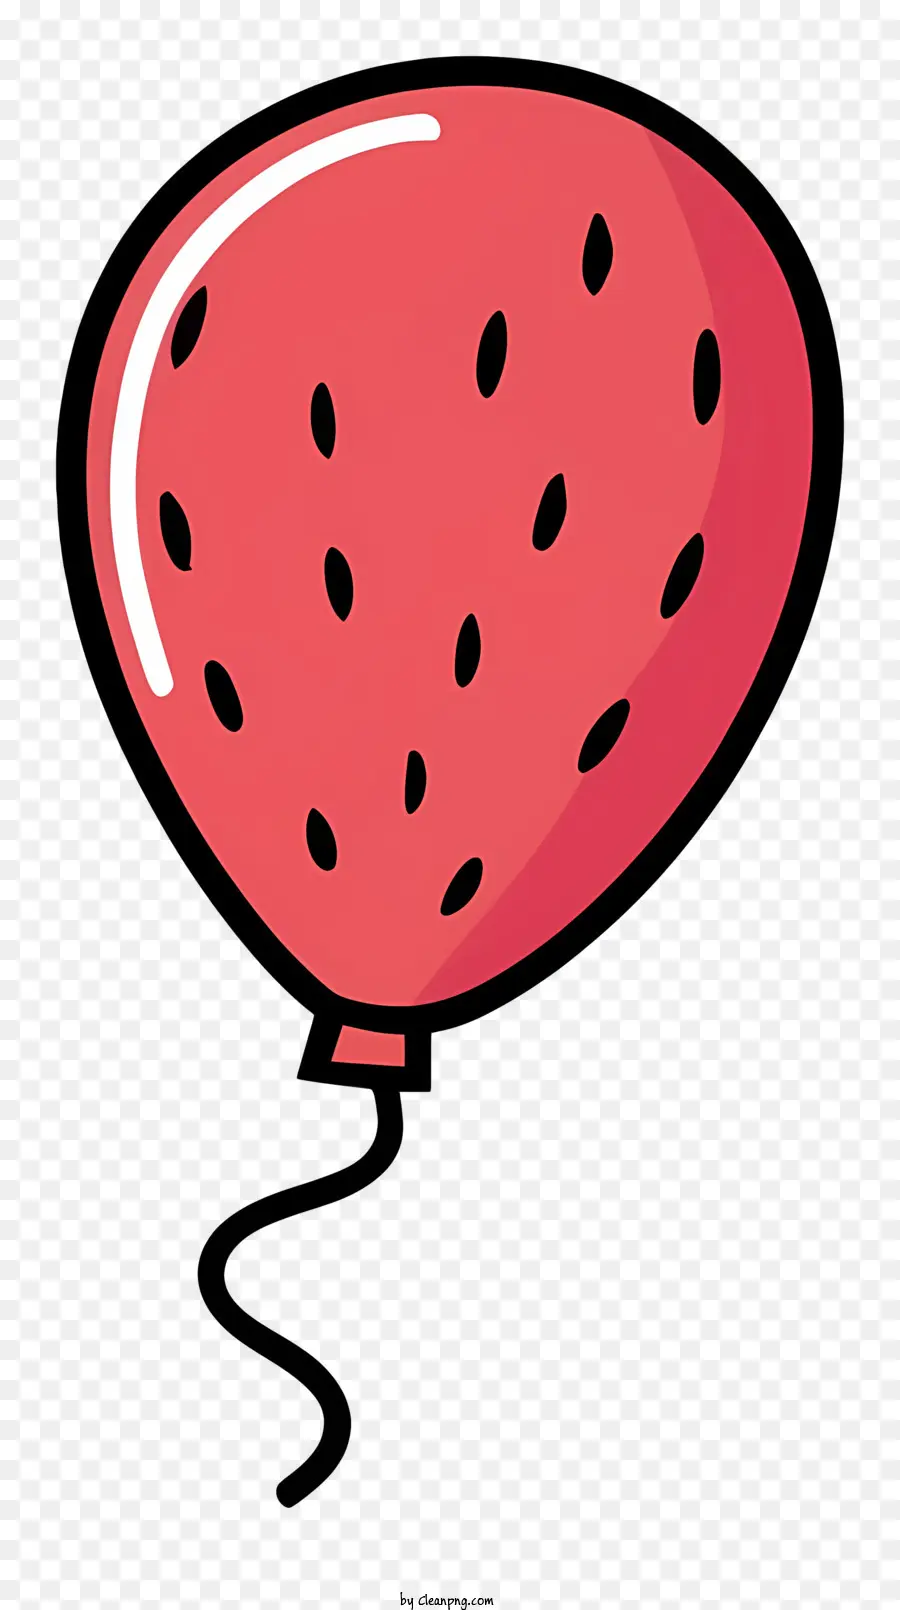 Quả Bóng Màu Đỏ - Balloon màu đỏ với hình ảnh lát dưa hấu kèm theo